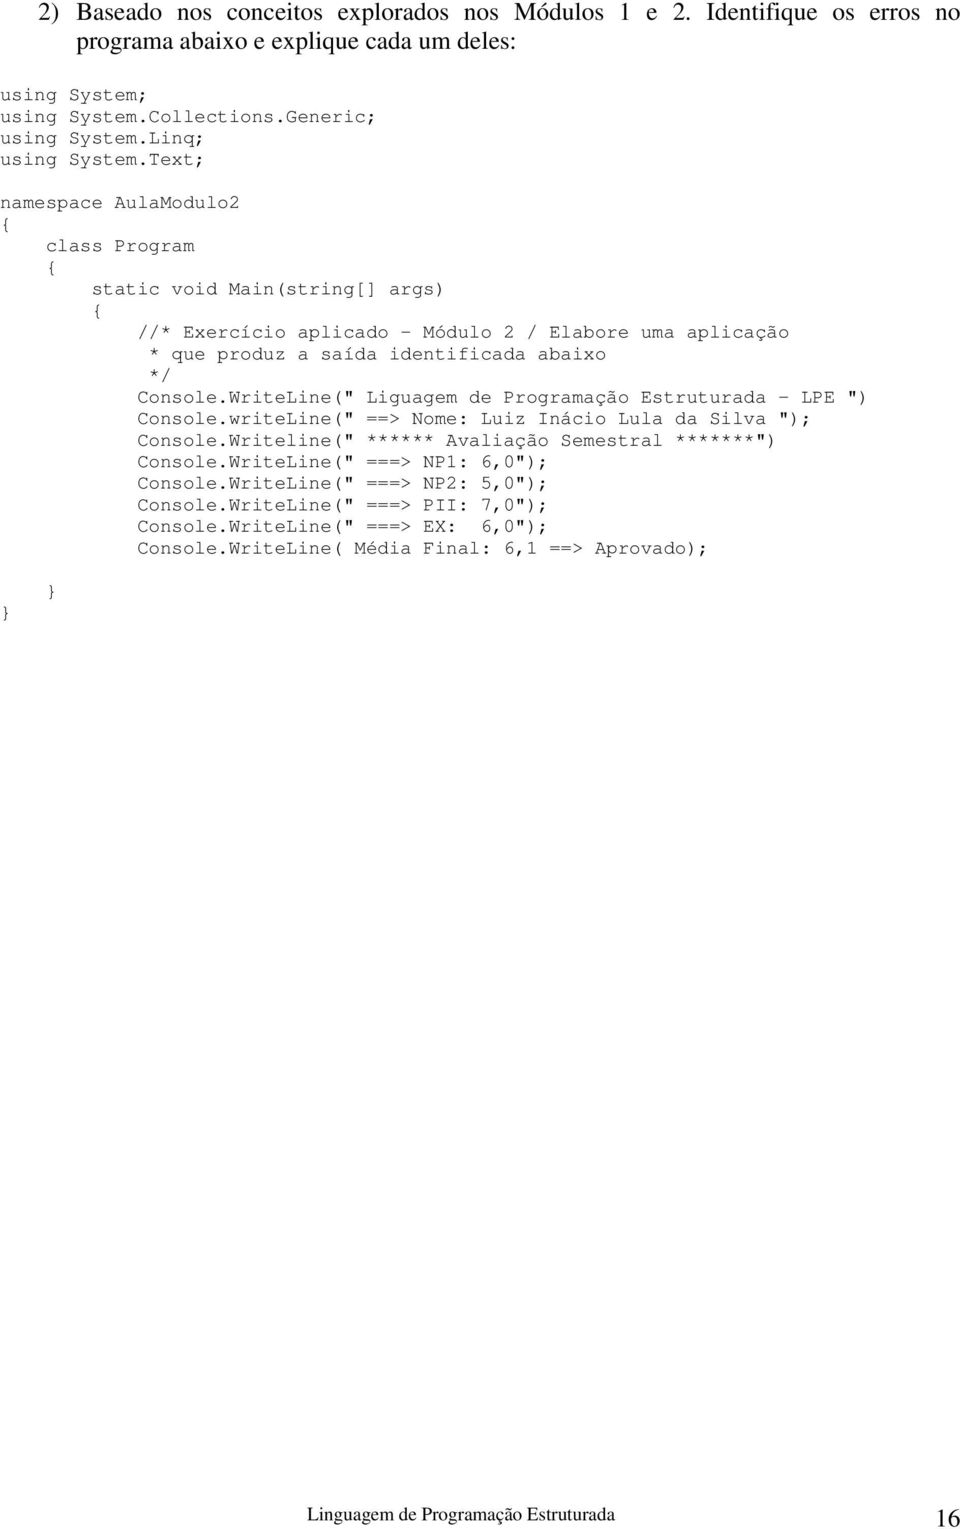 Text; namespace AulaModulo2 class Program static void Main(string[] args) * Exercício aplicado - Módulo 2 / Elabore uma aplicação * que produz a saída identificada abaixo */ Console.